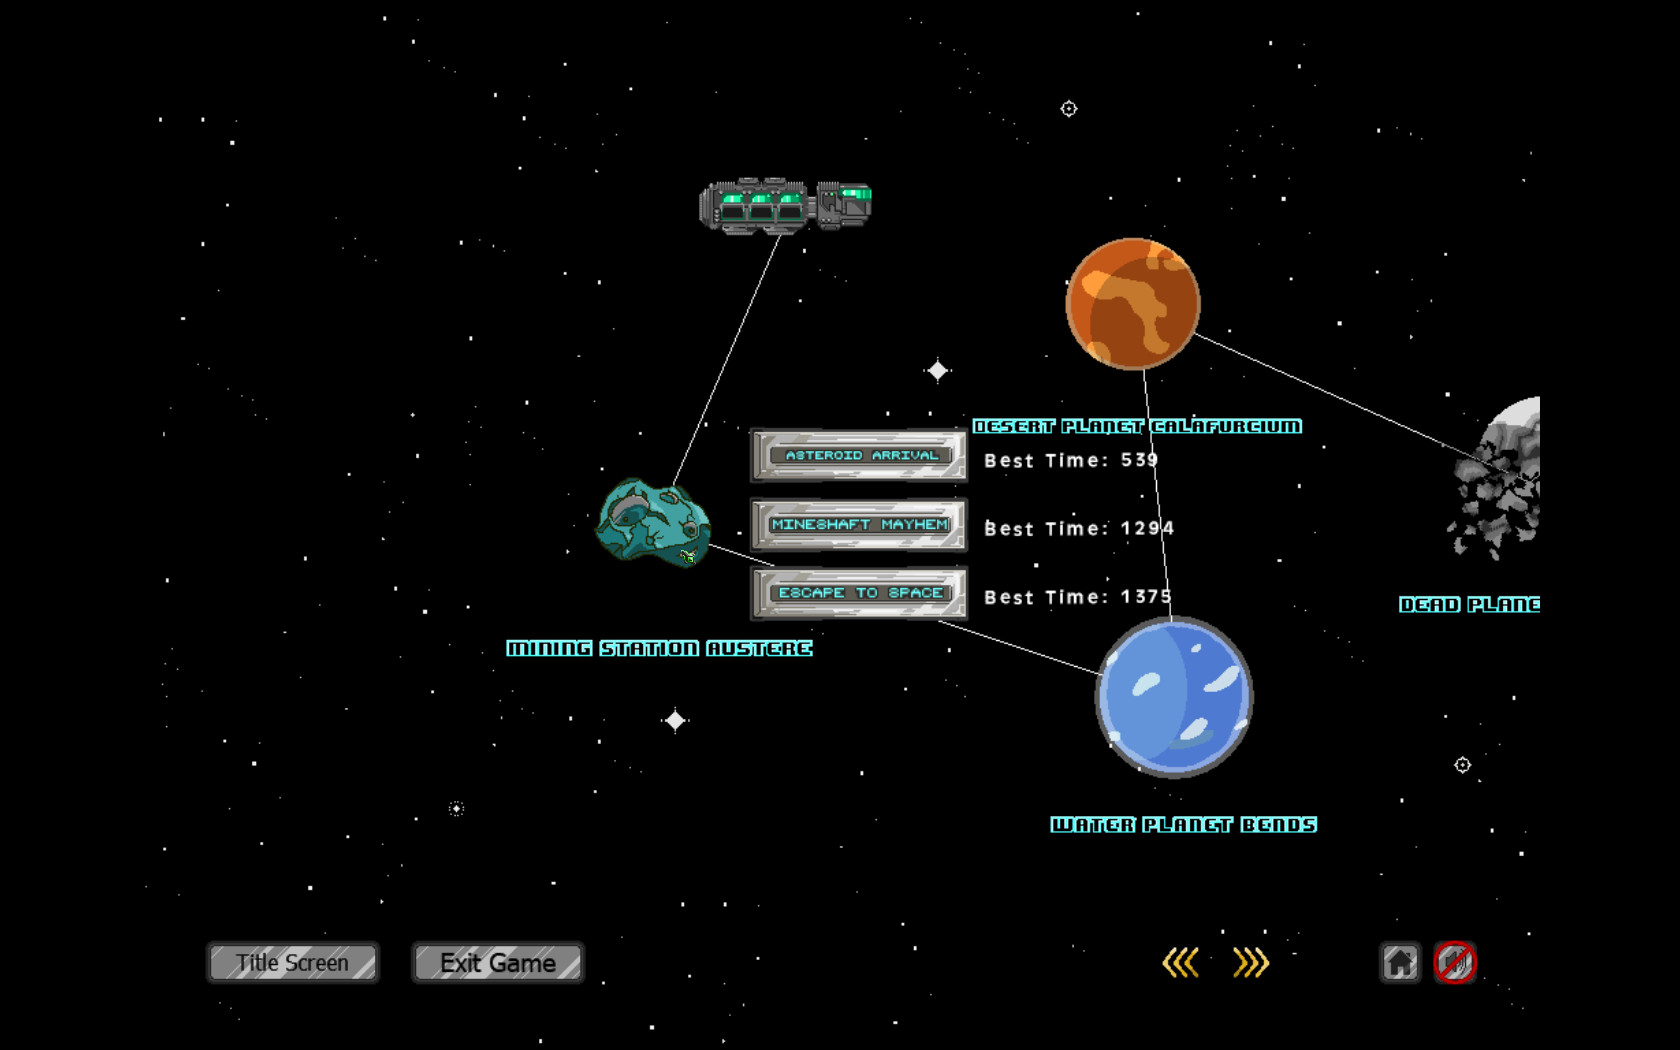 Fleet Scrapper screenshot